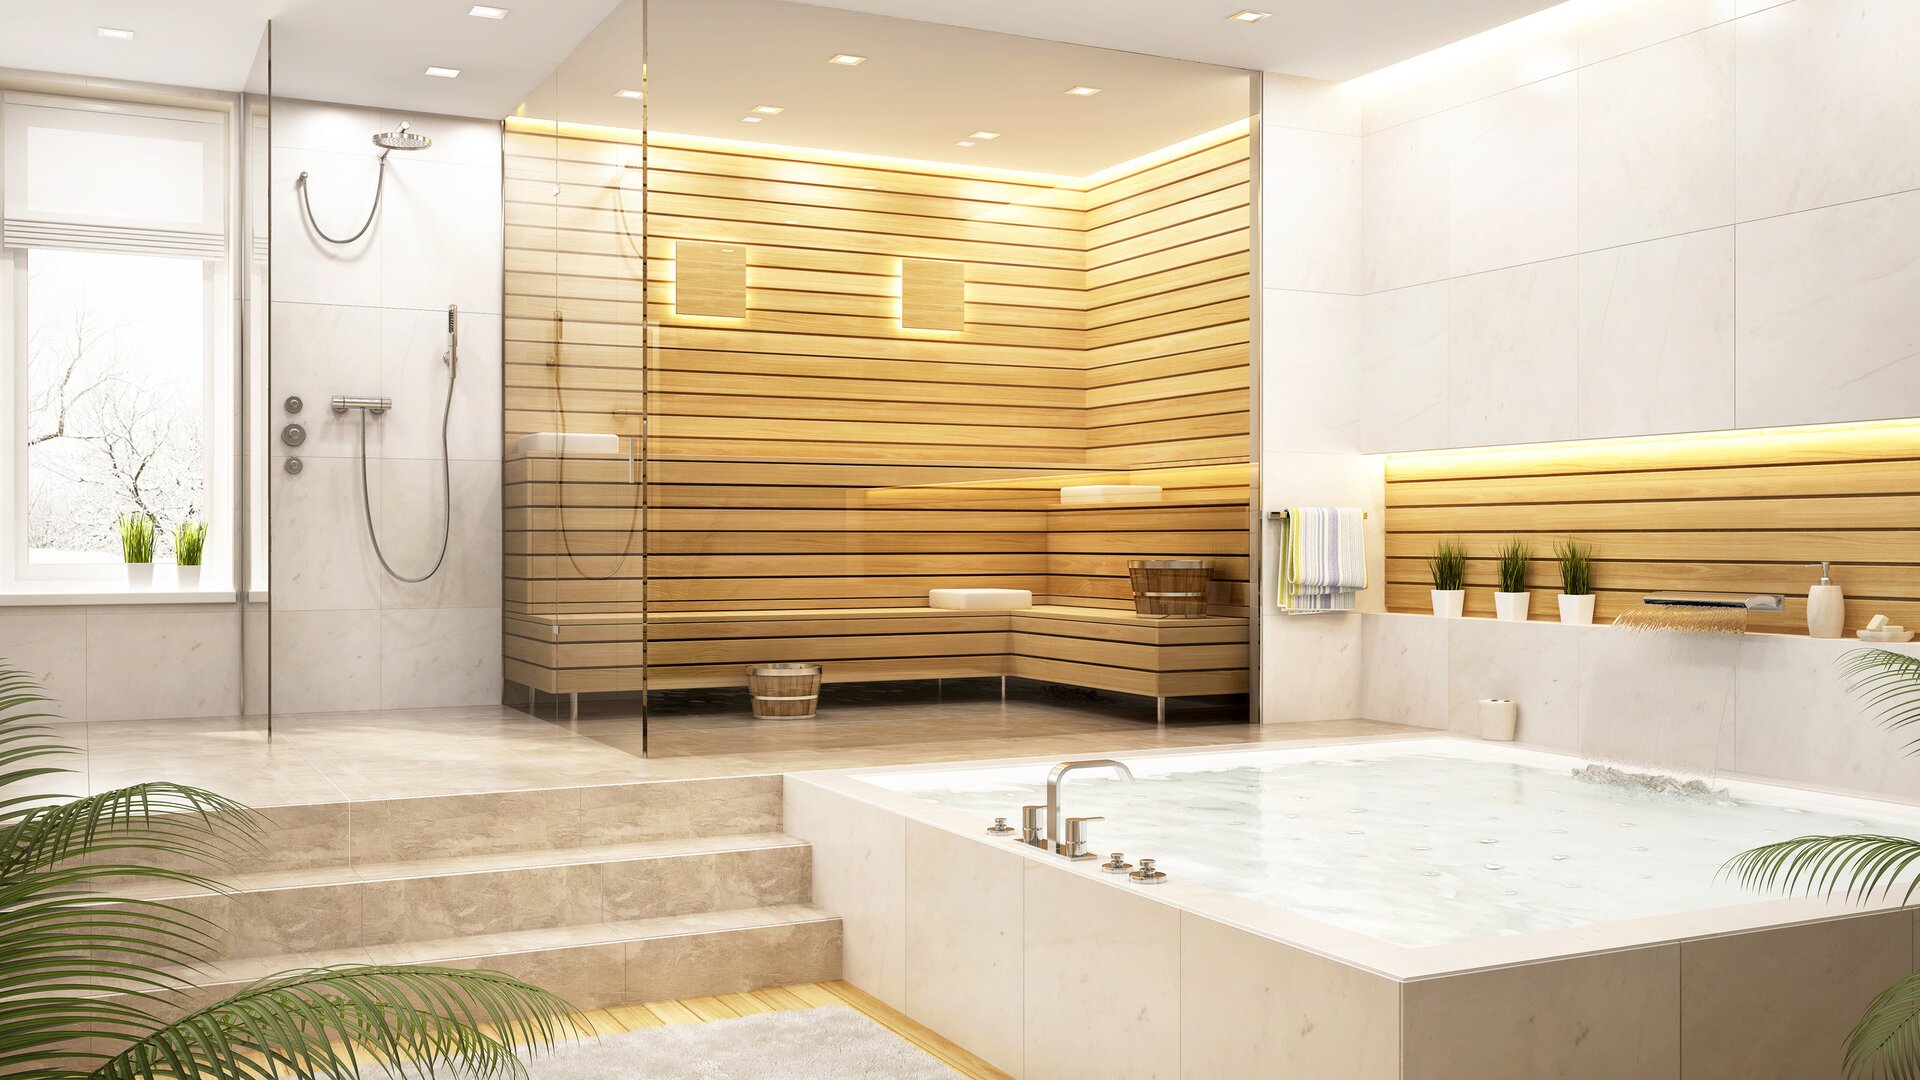 Modernes helles Badezimmer mit Natursteinfliesen, Dusche, Whirlpool und hölzerner Sauna.